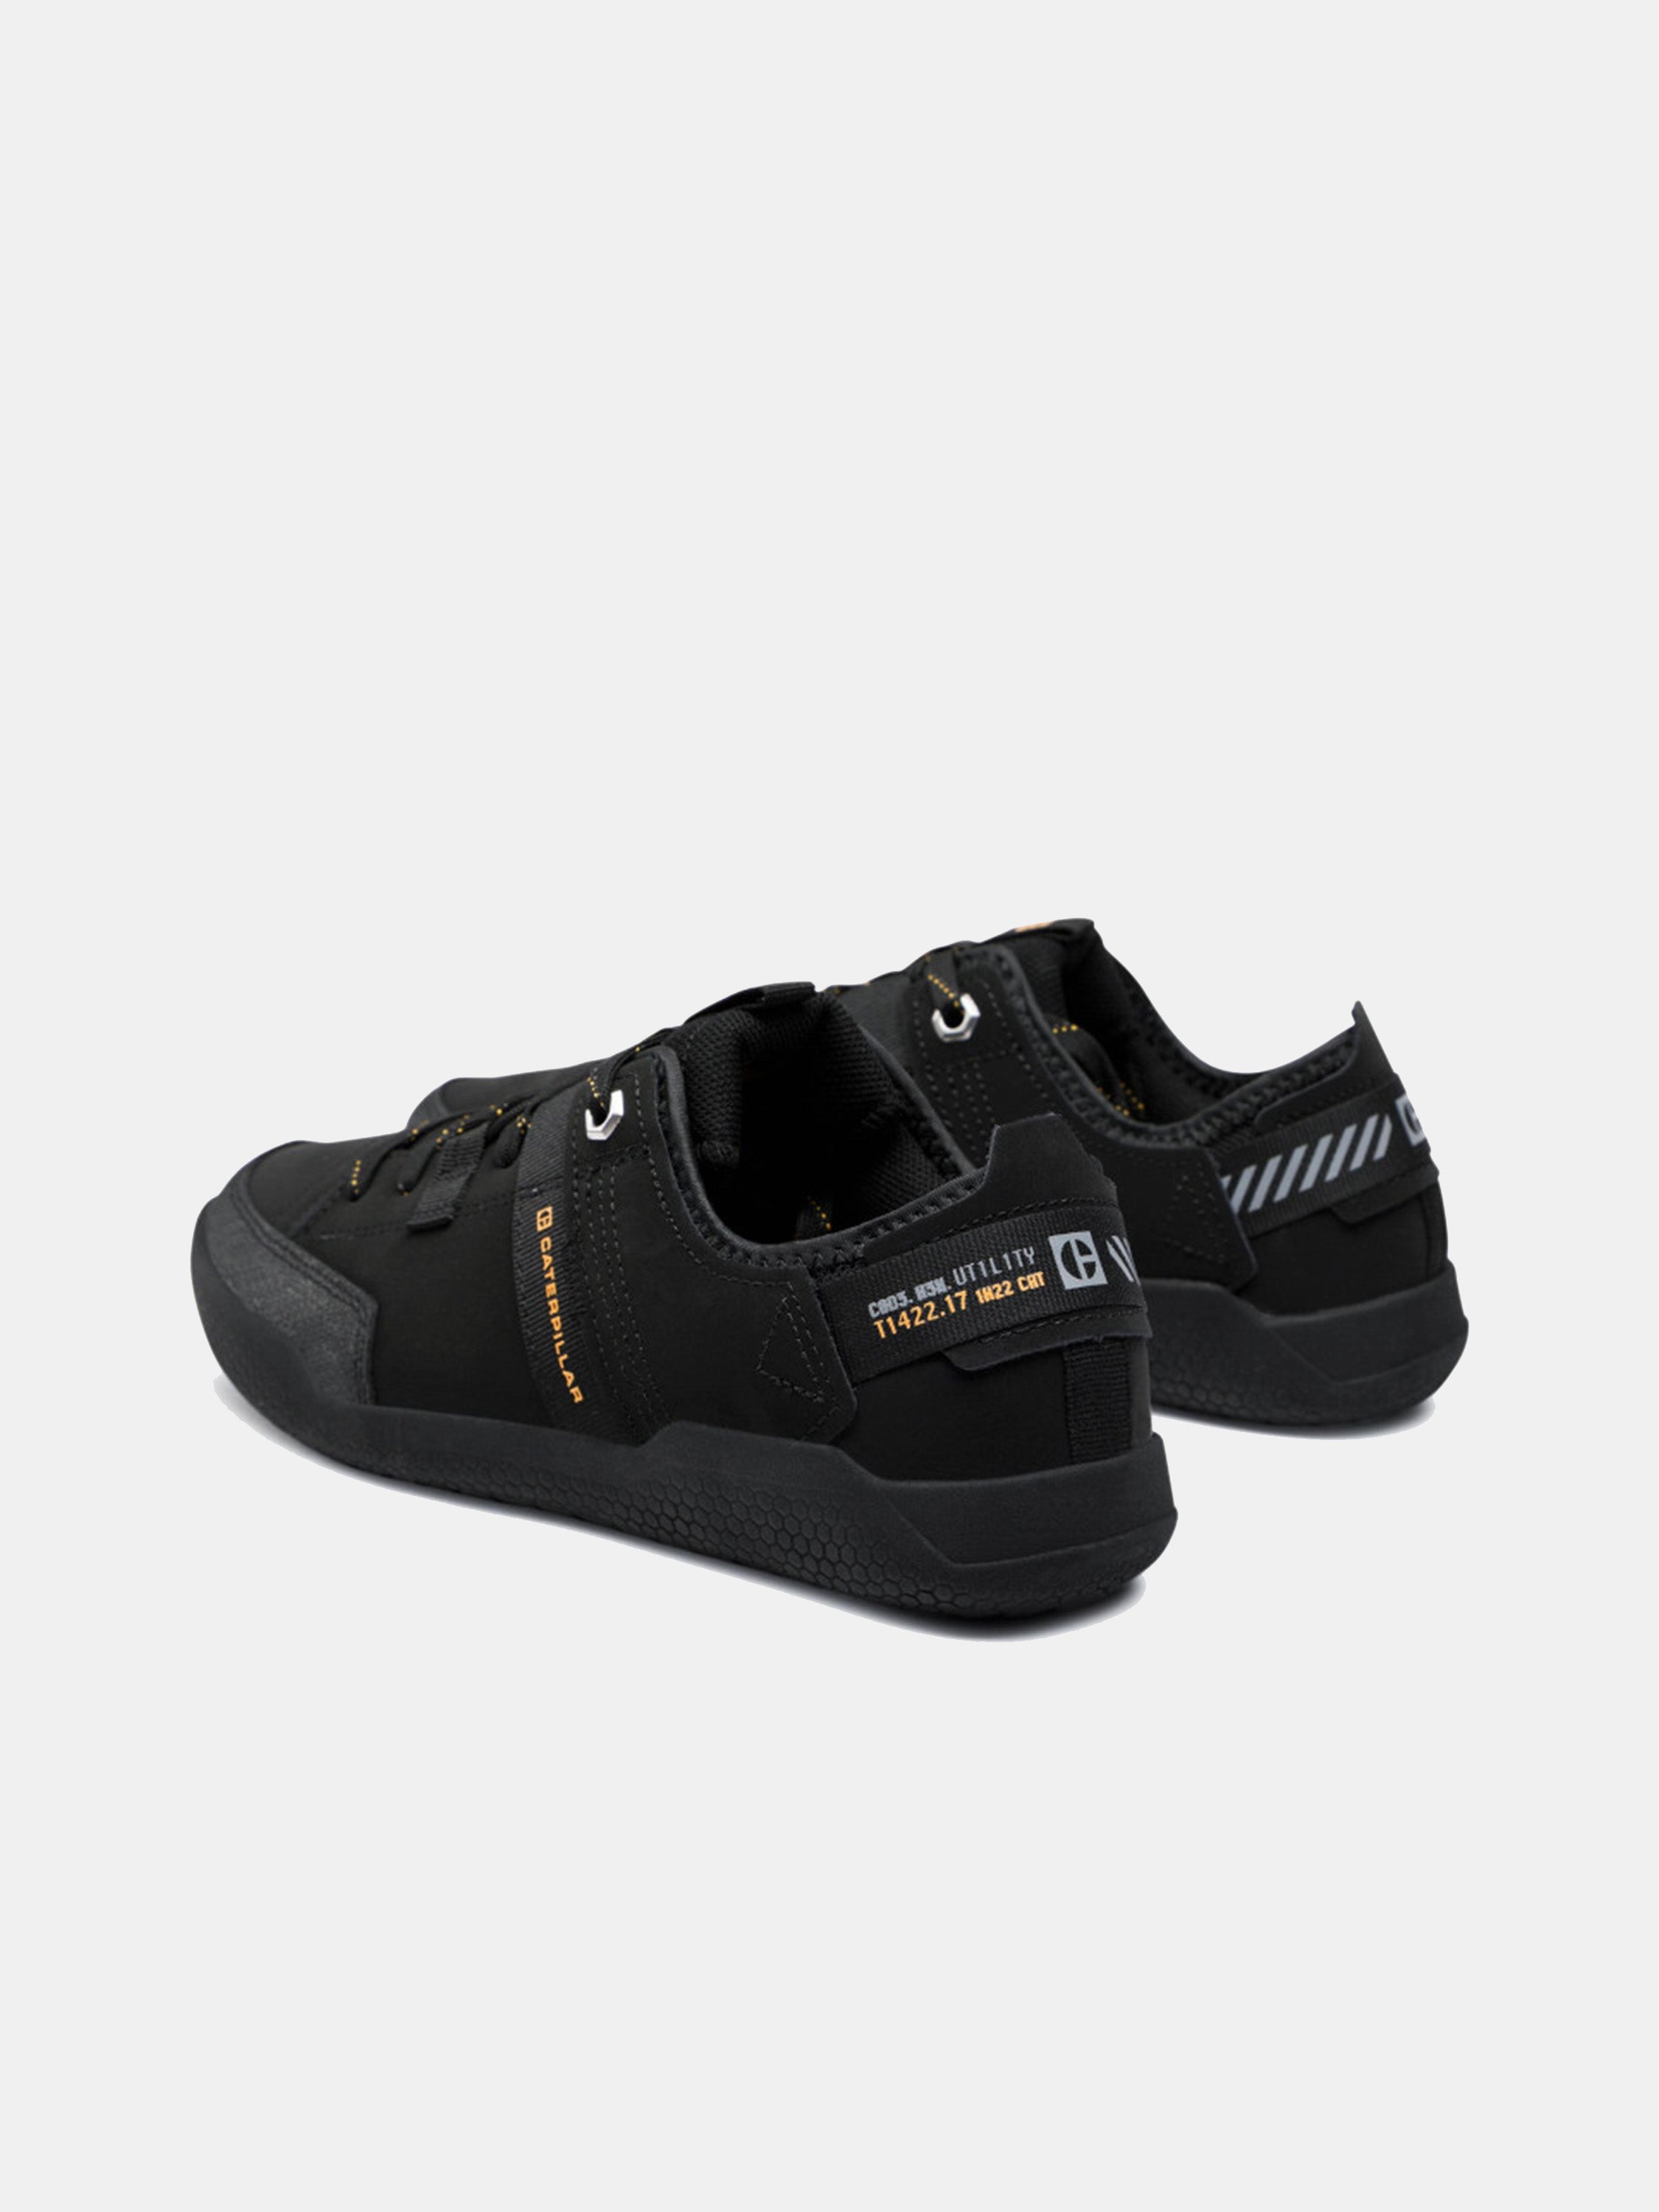 Caterpillar Men's Hex Tough Shoes #color_Black